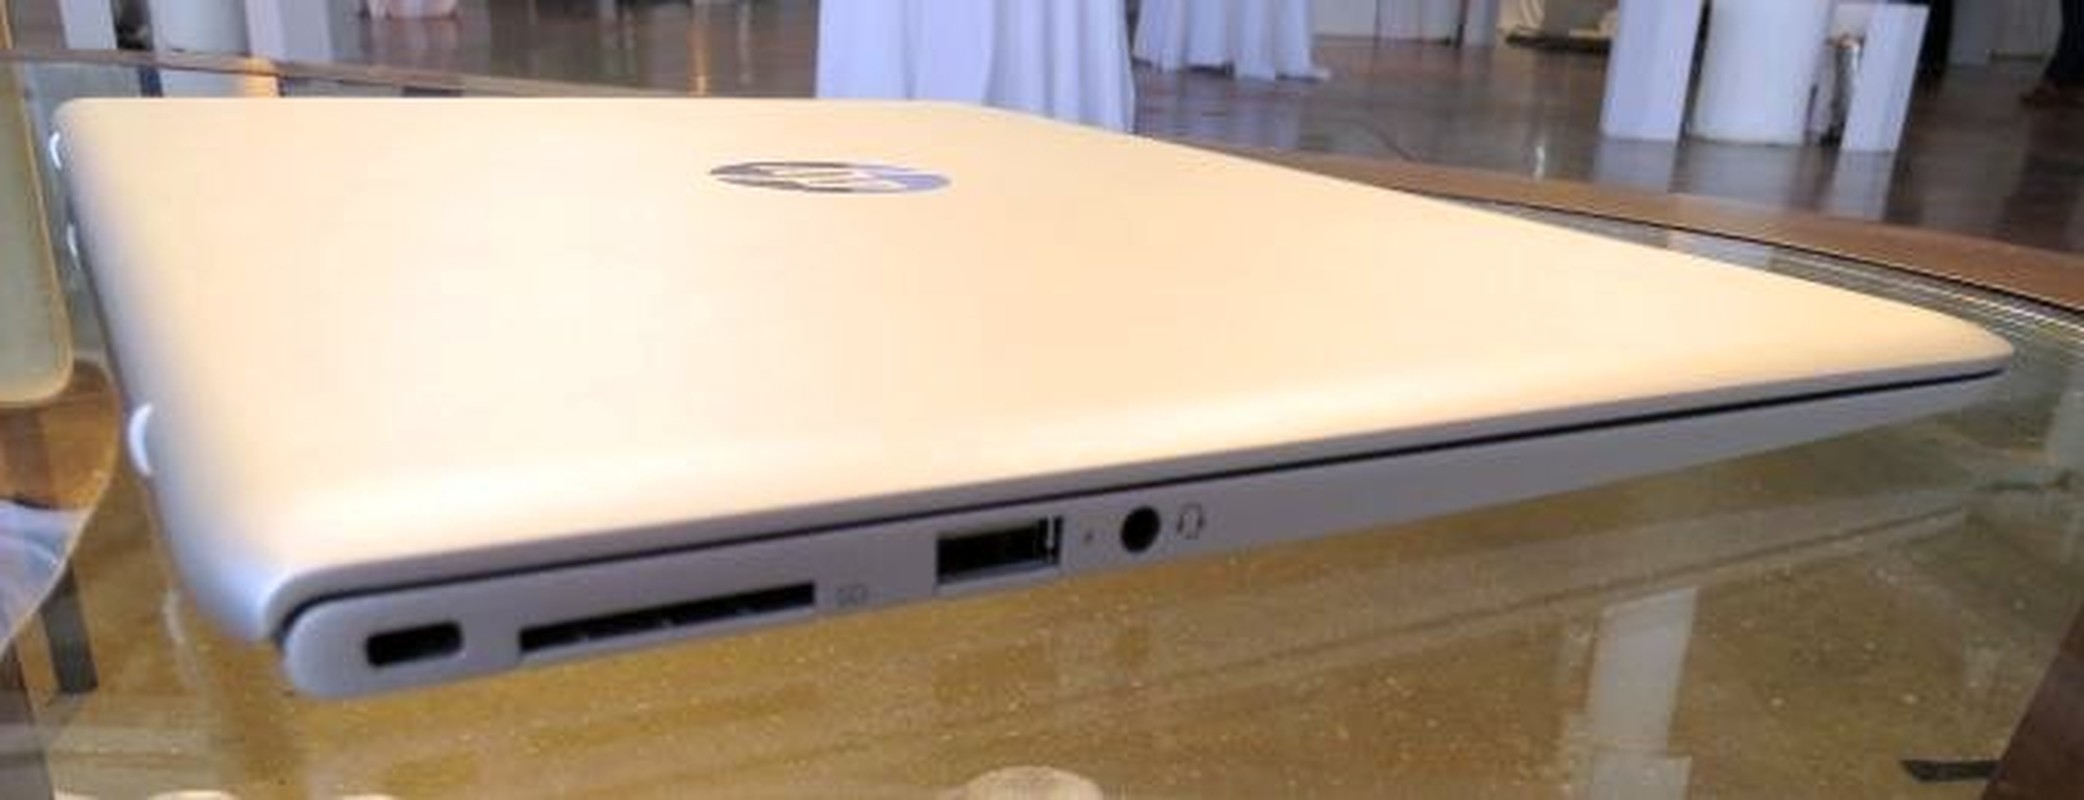 Ngam laptop HP Envy 13 dung chip Skylake, gia tu 900 USD-Hinh-8